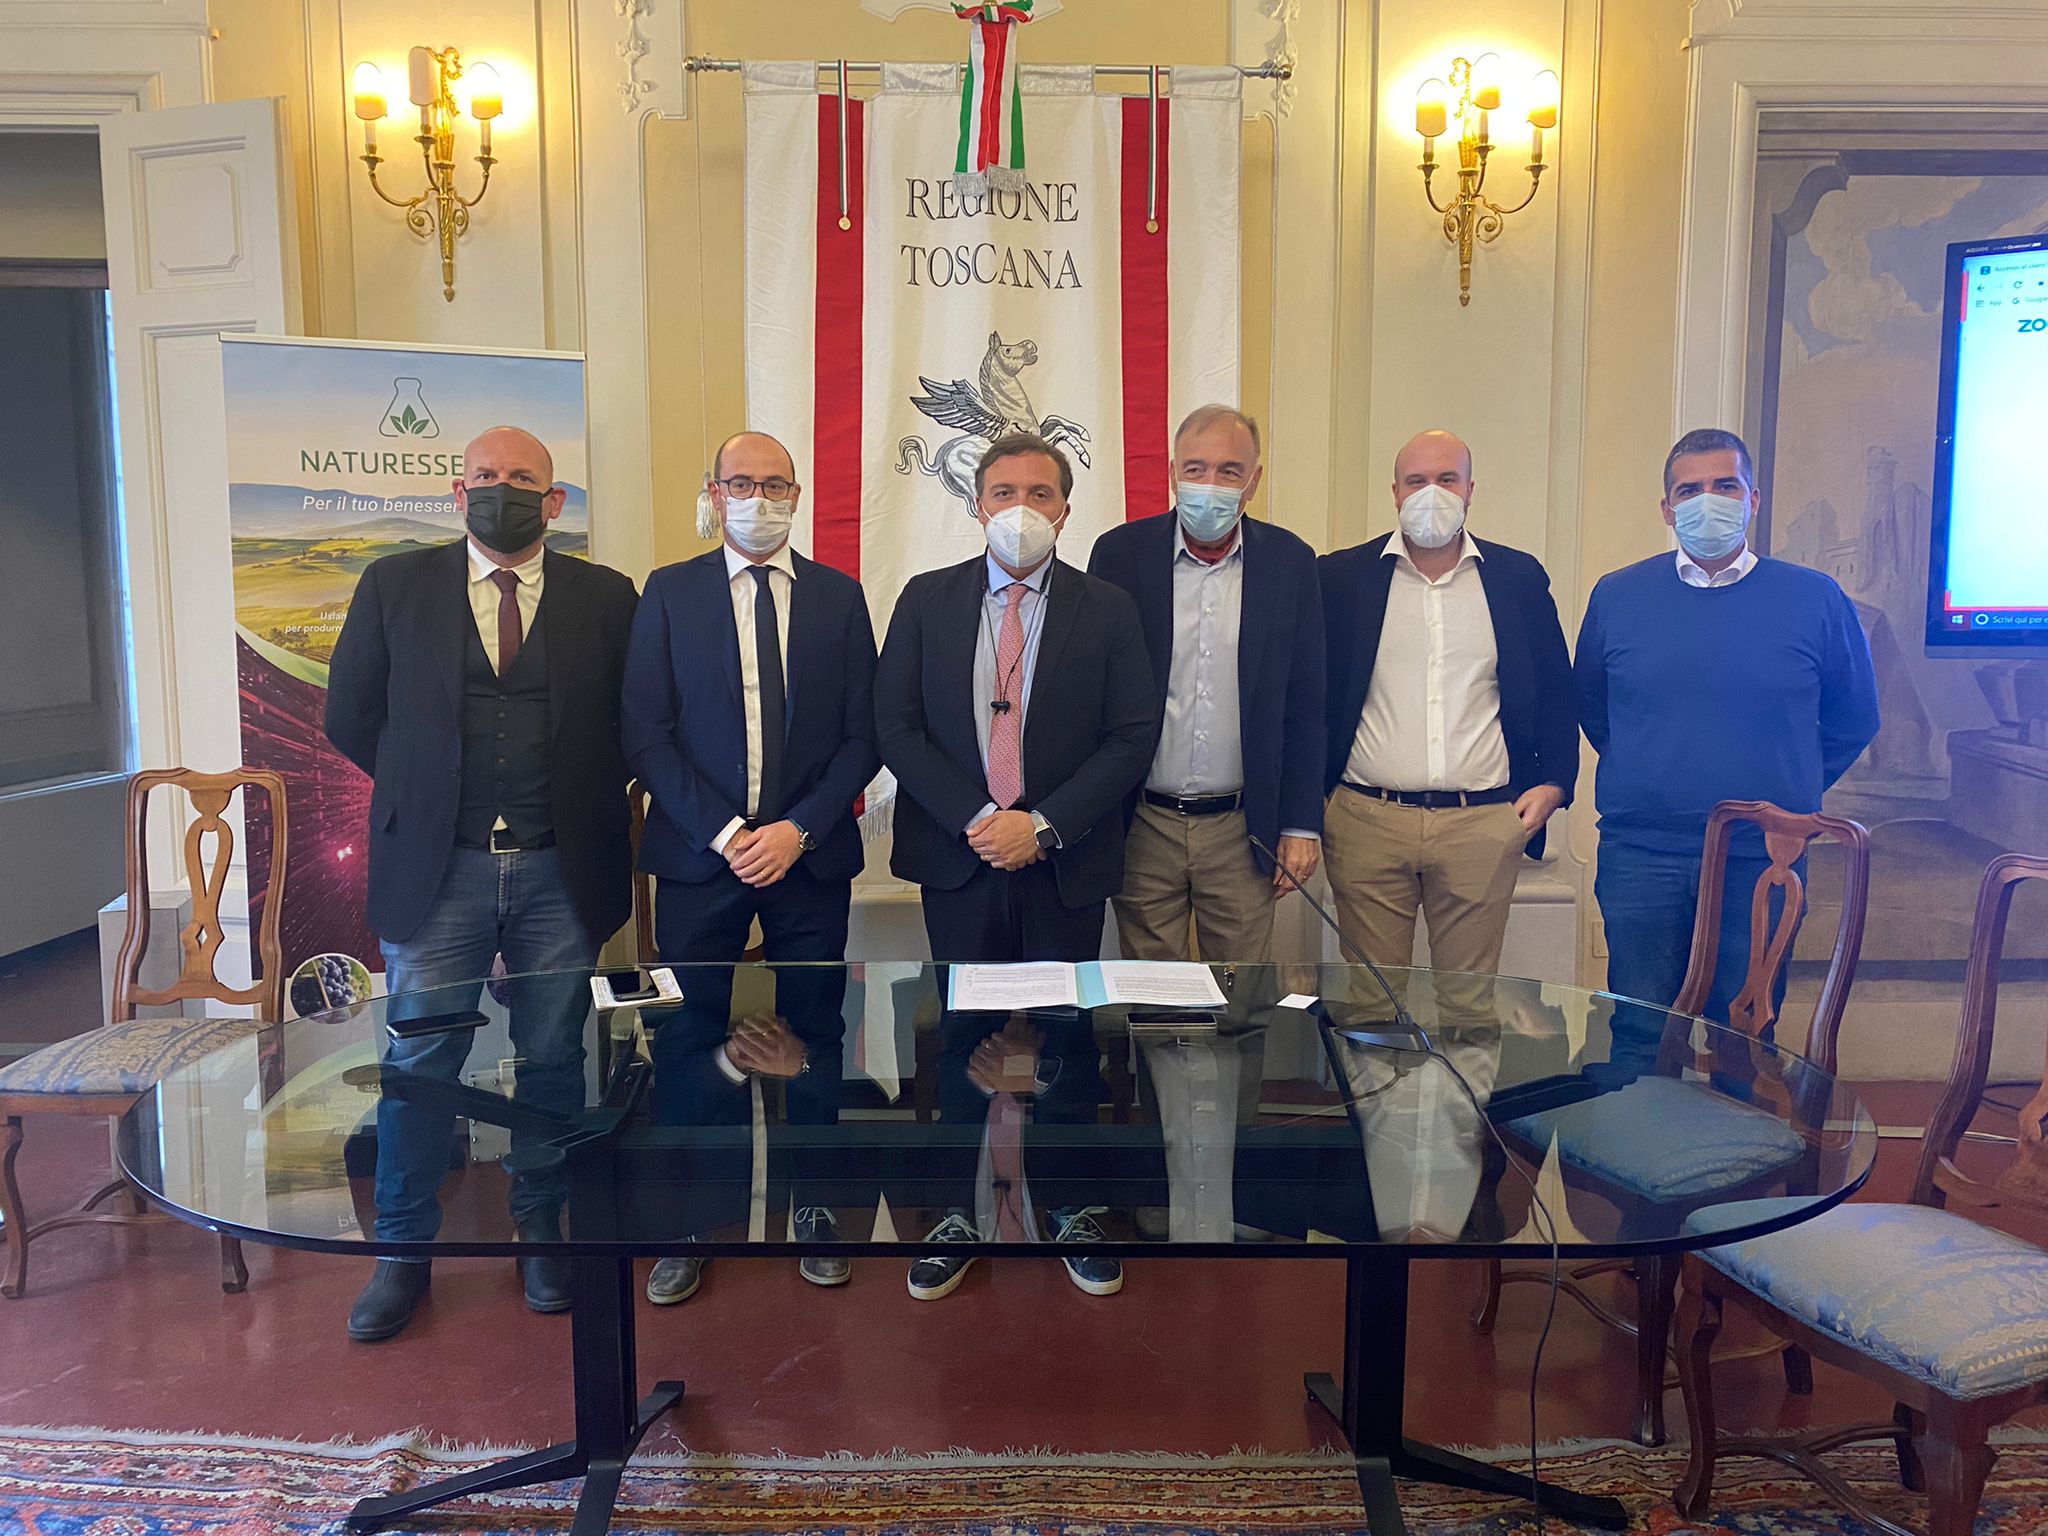 L'assessore Marras con i sindaci e i rappresentanti dell'azienda (Fonte foto Regione Toscana)